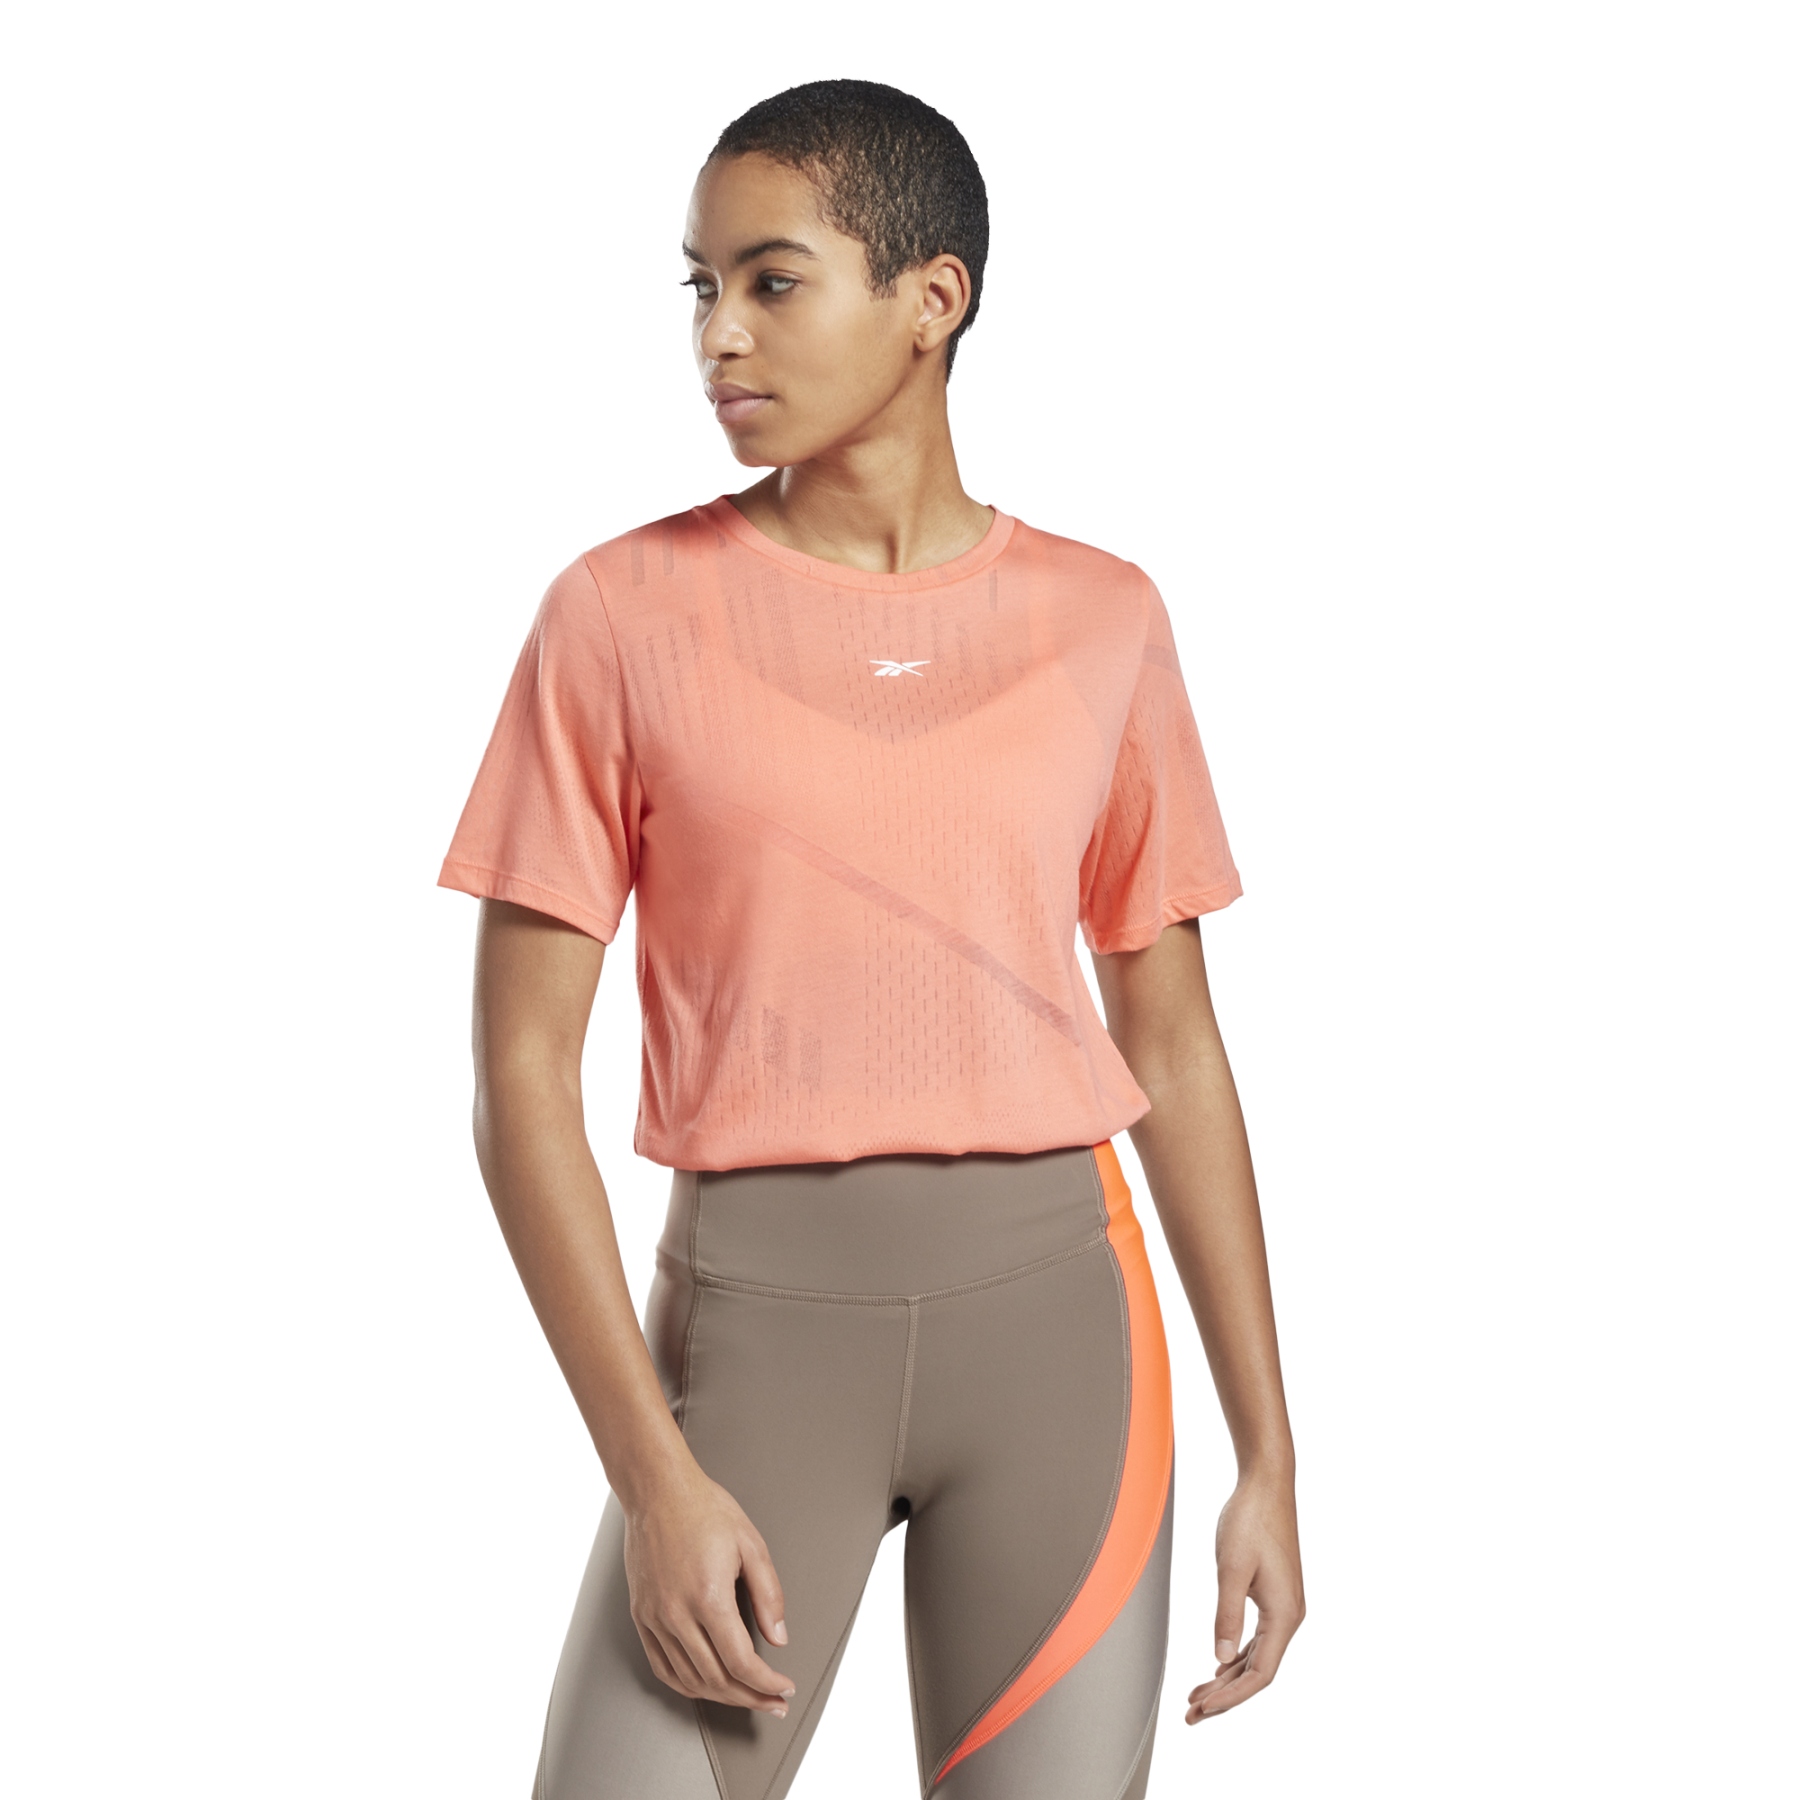 Produktbild von Reebok Burnout T-Shirt Damen - twisted coral GI6730